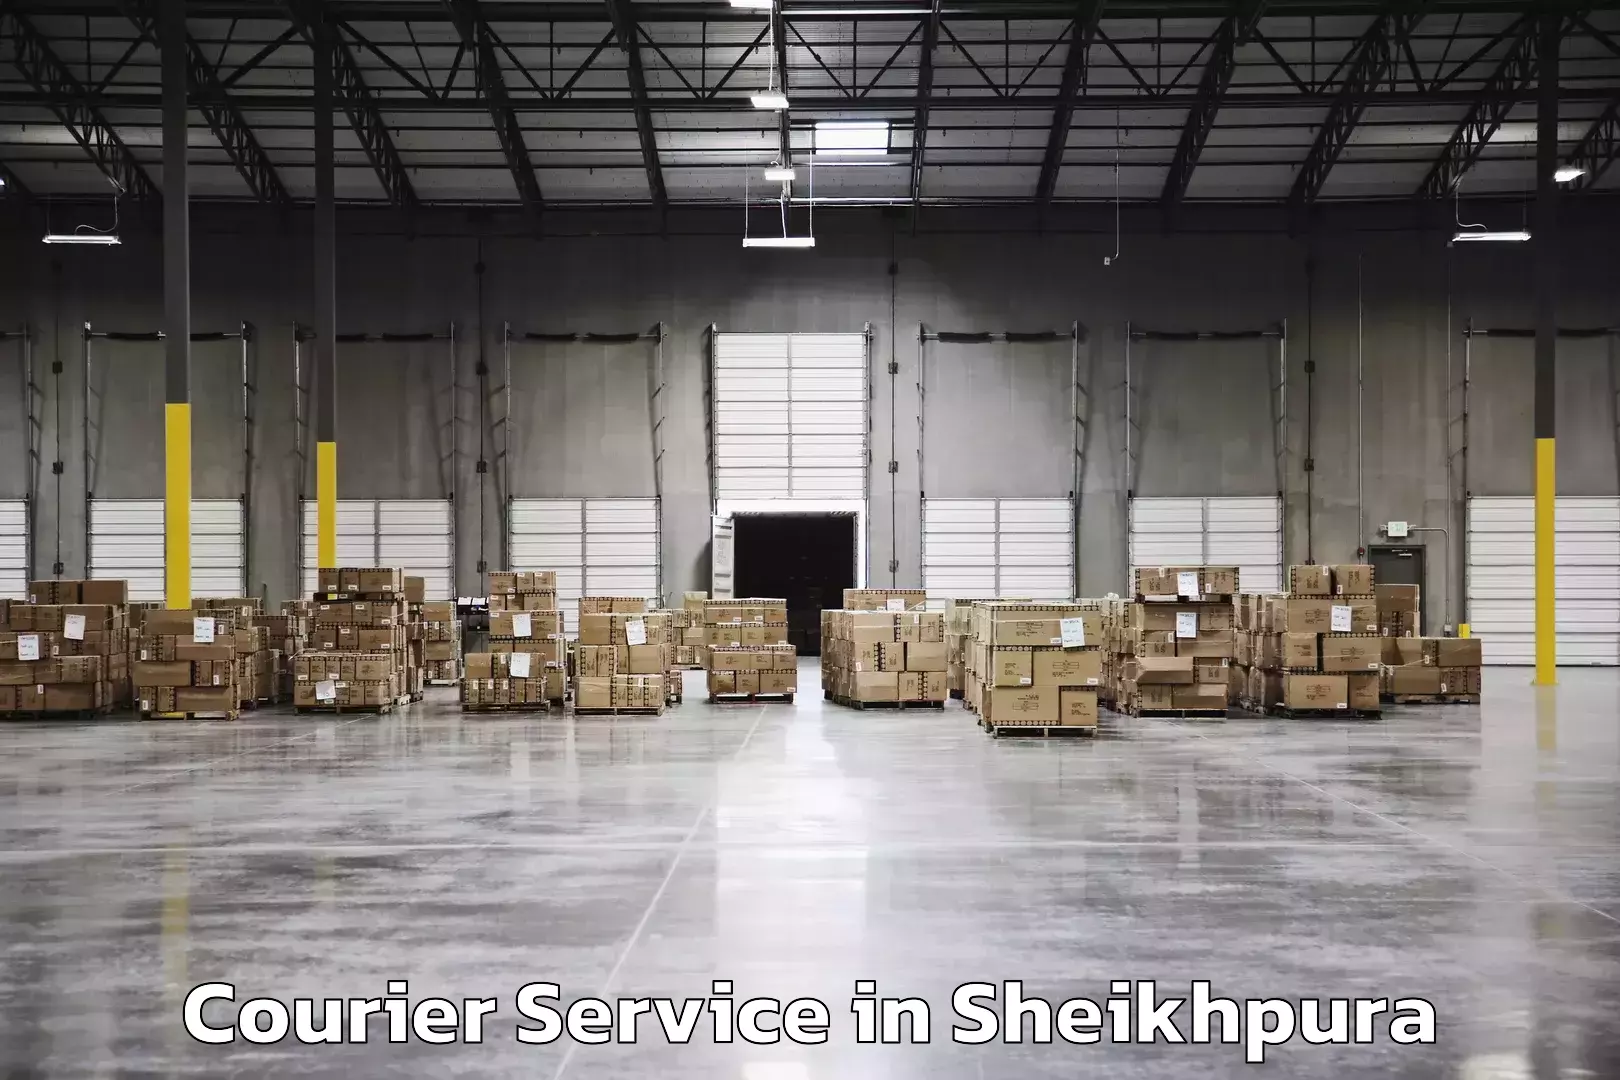 Smart logistics strategies in Sheikhpura